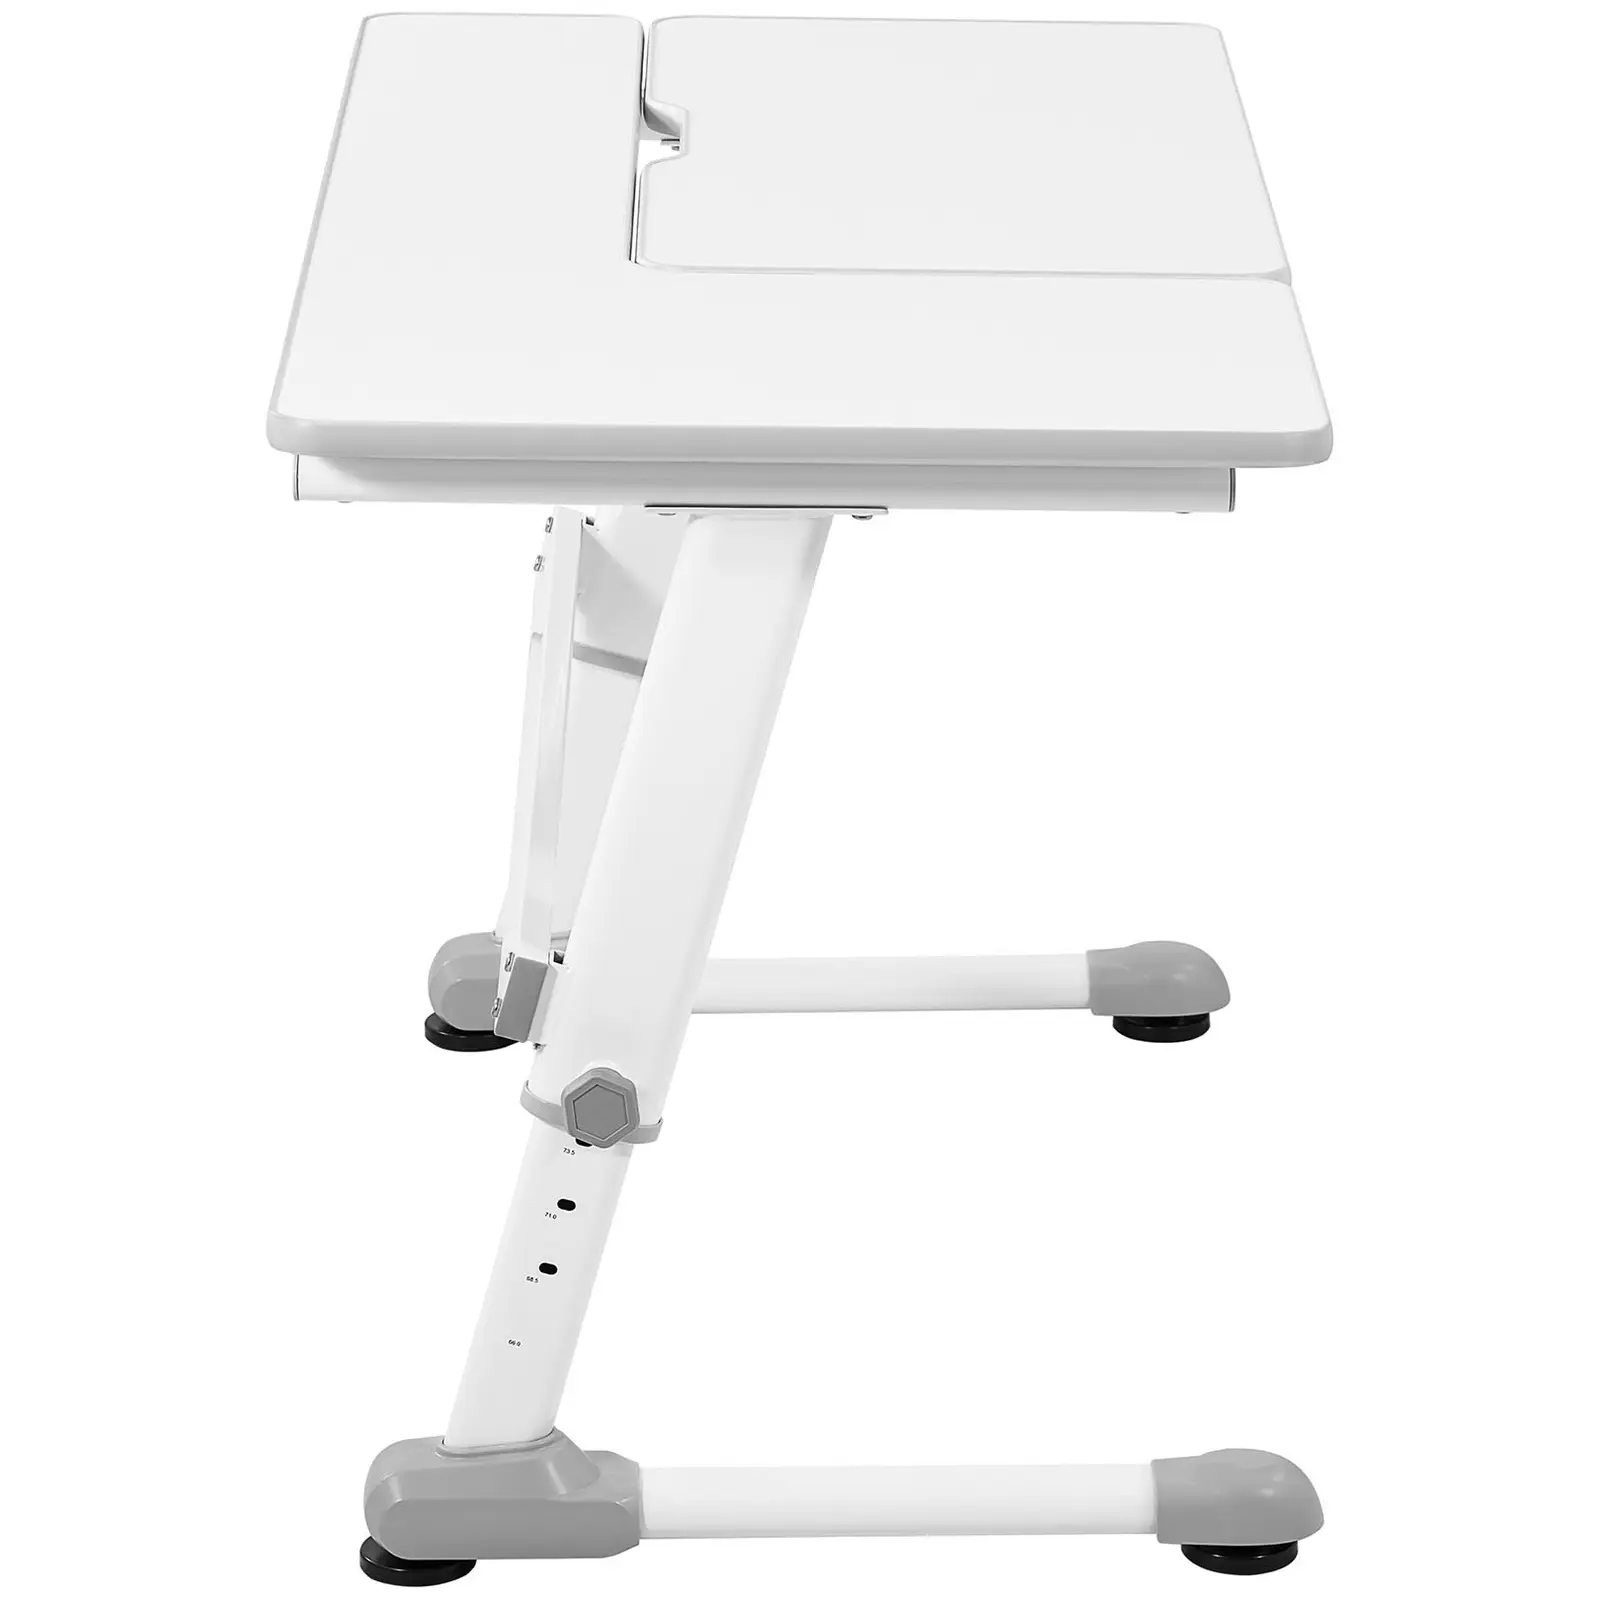 Sitt-stå skrivebord - 120 x 66 cm - tilts 0 - 50° - høyde: 600 - 760 mm